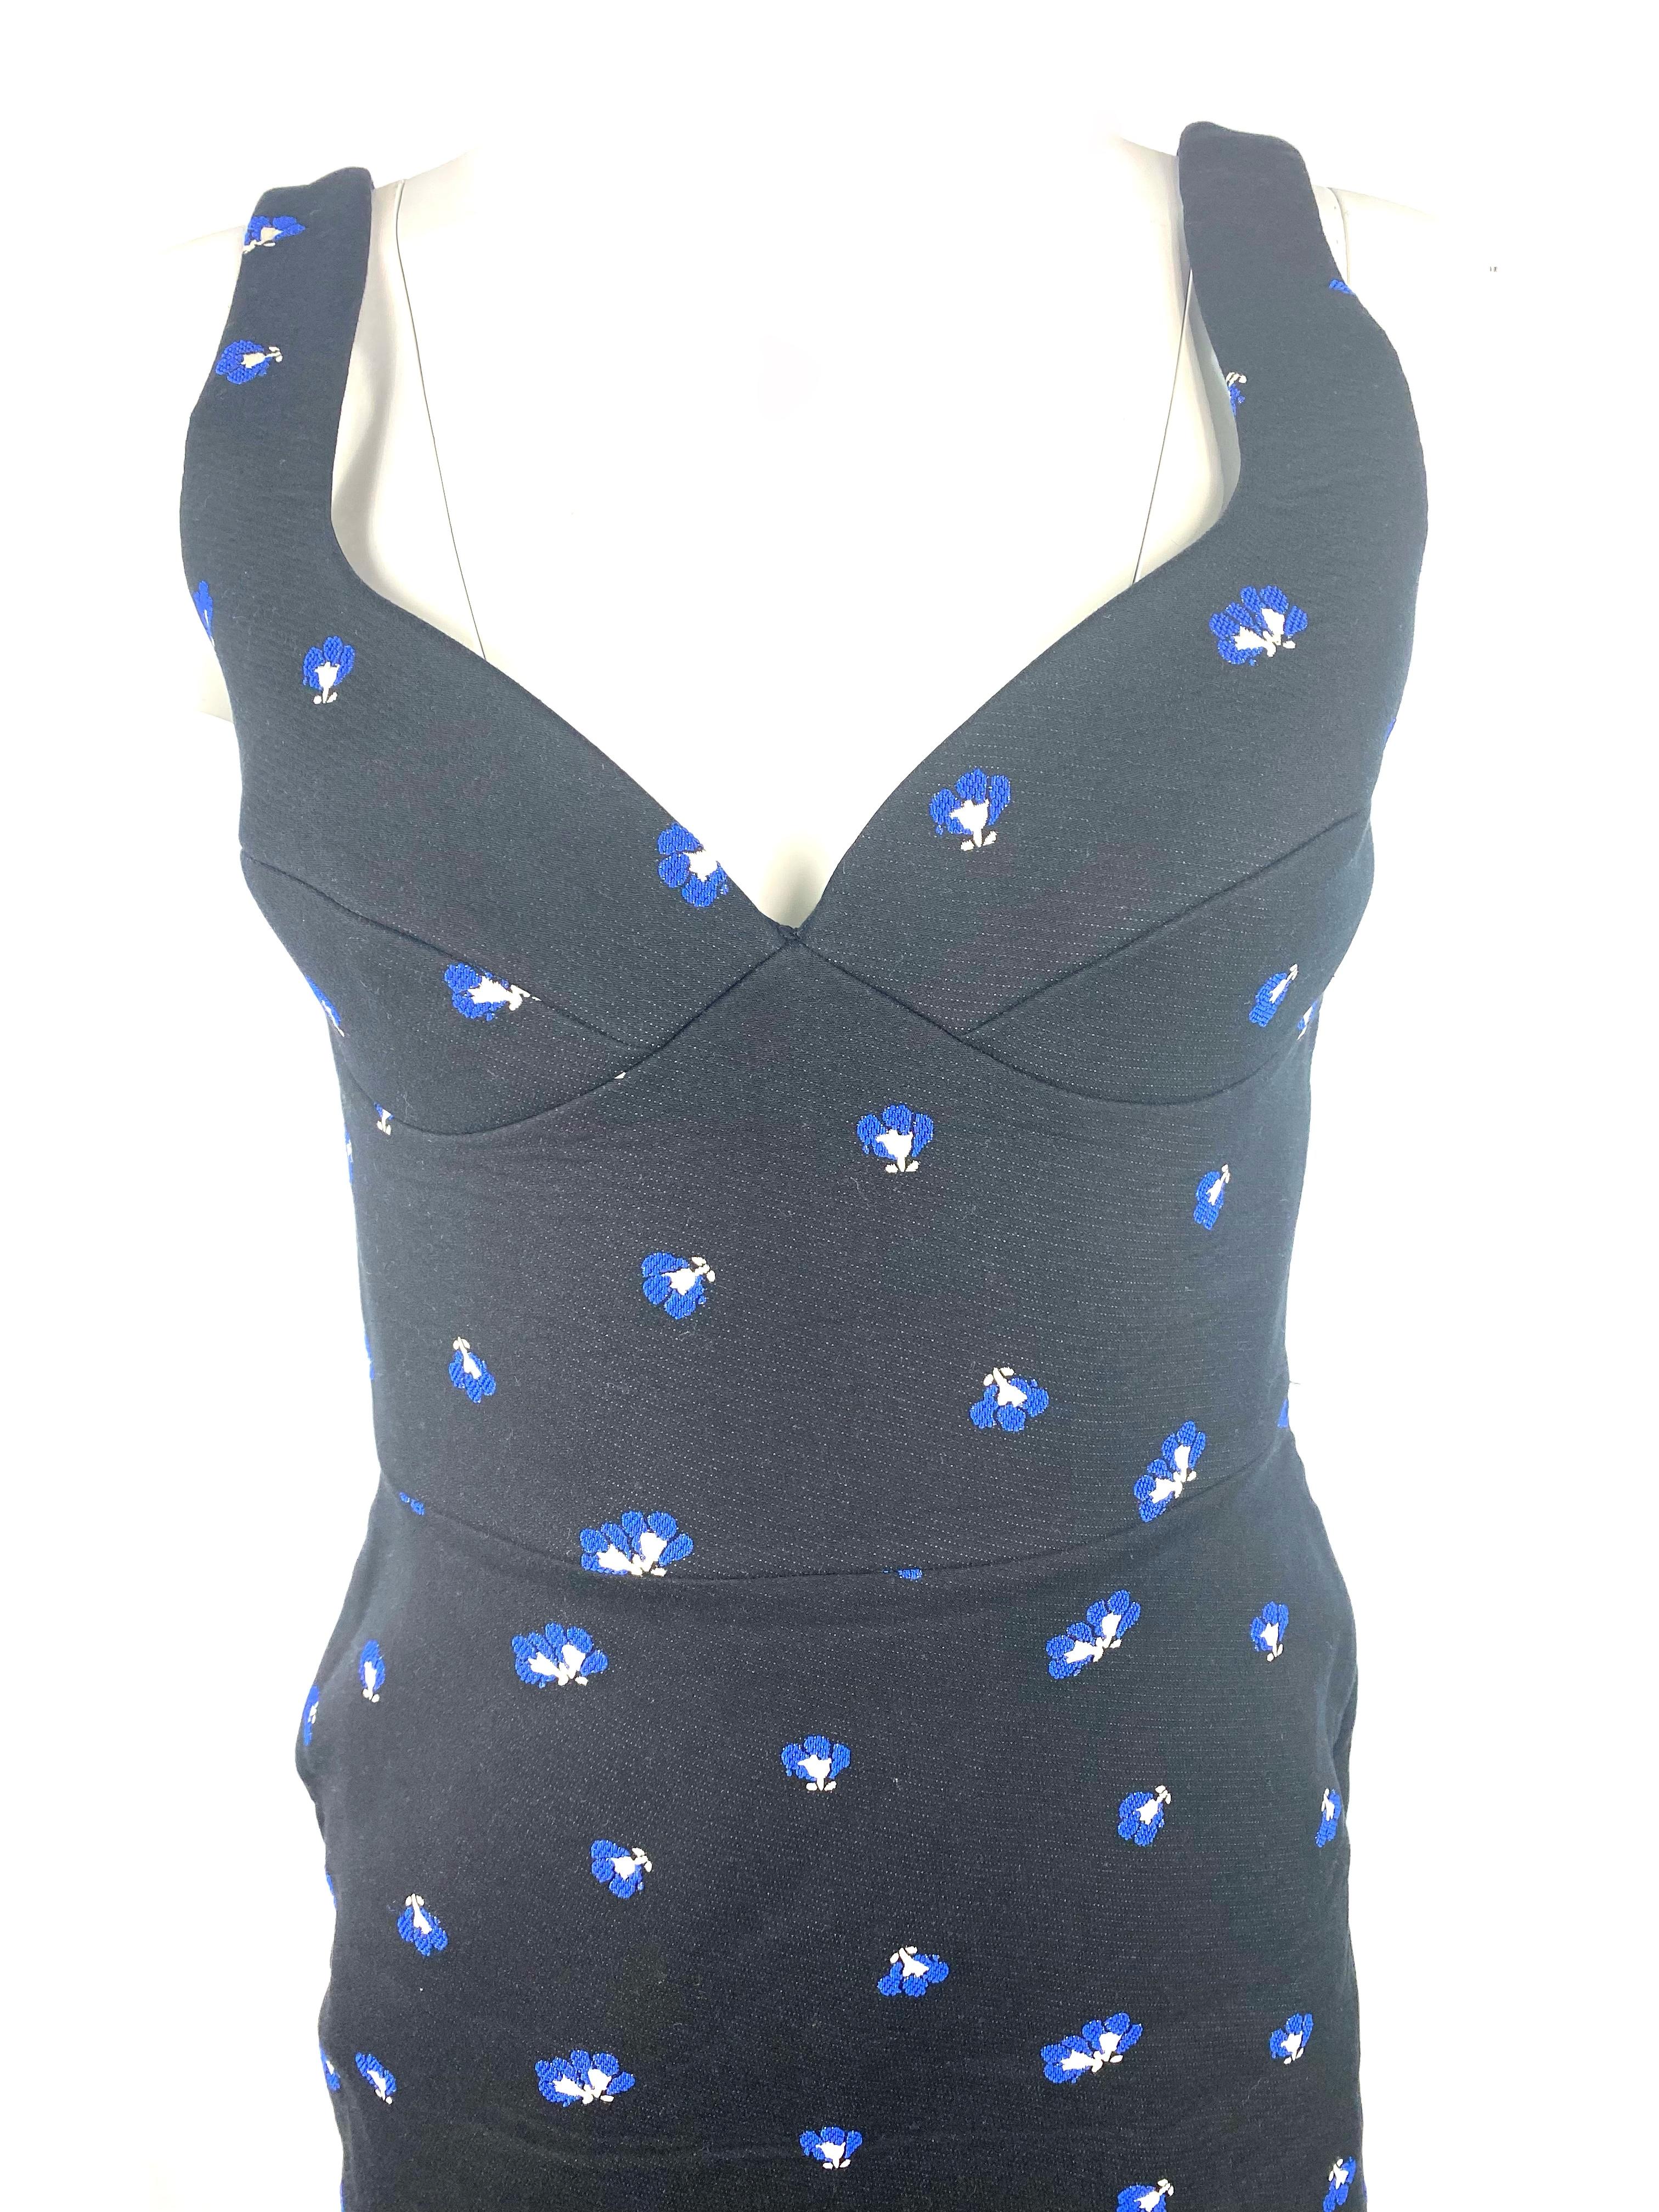 Détails du produit :

La robe présente un motif floral bleu et blanc, une fermeture éclair argentée sur toute la longueur à l'arrière, un dos ouvert et une longueur moyenne.